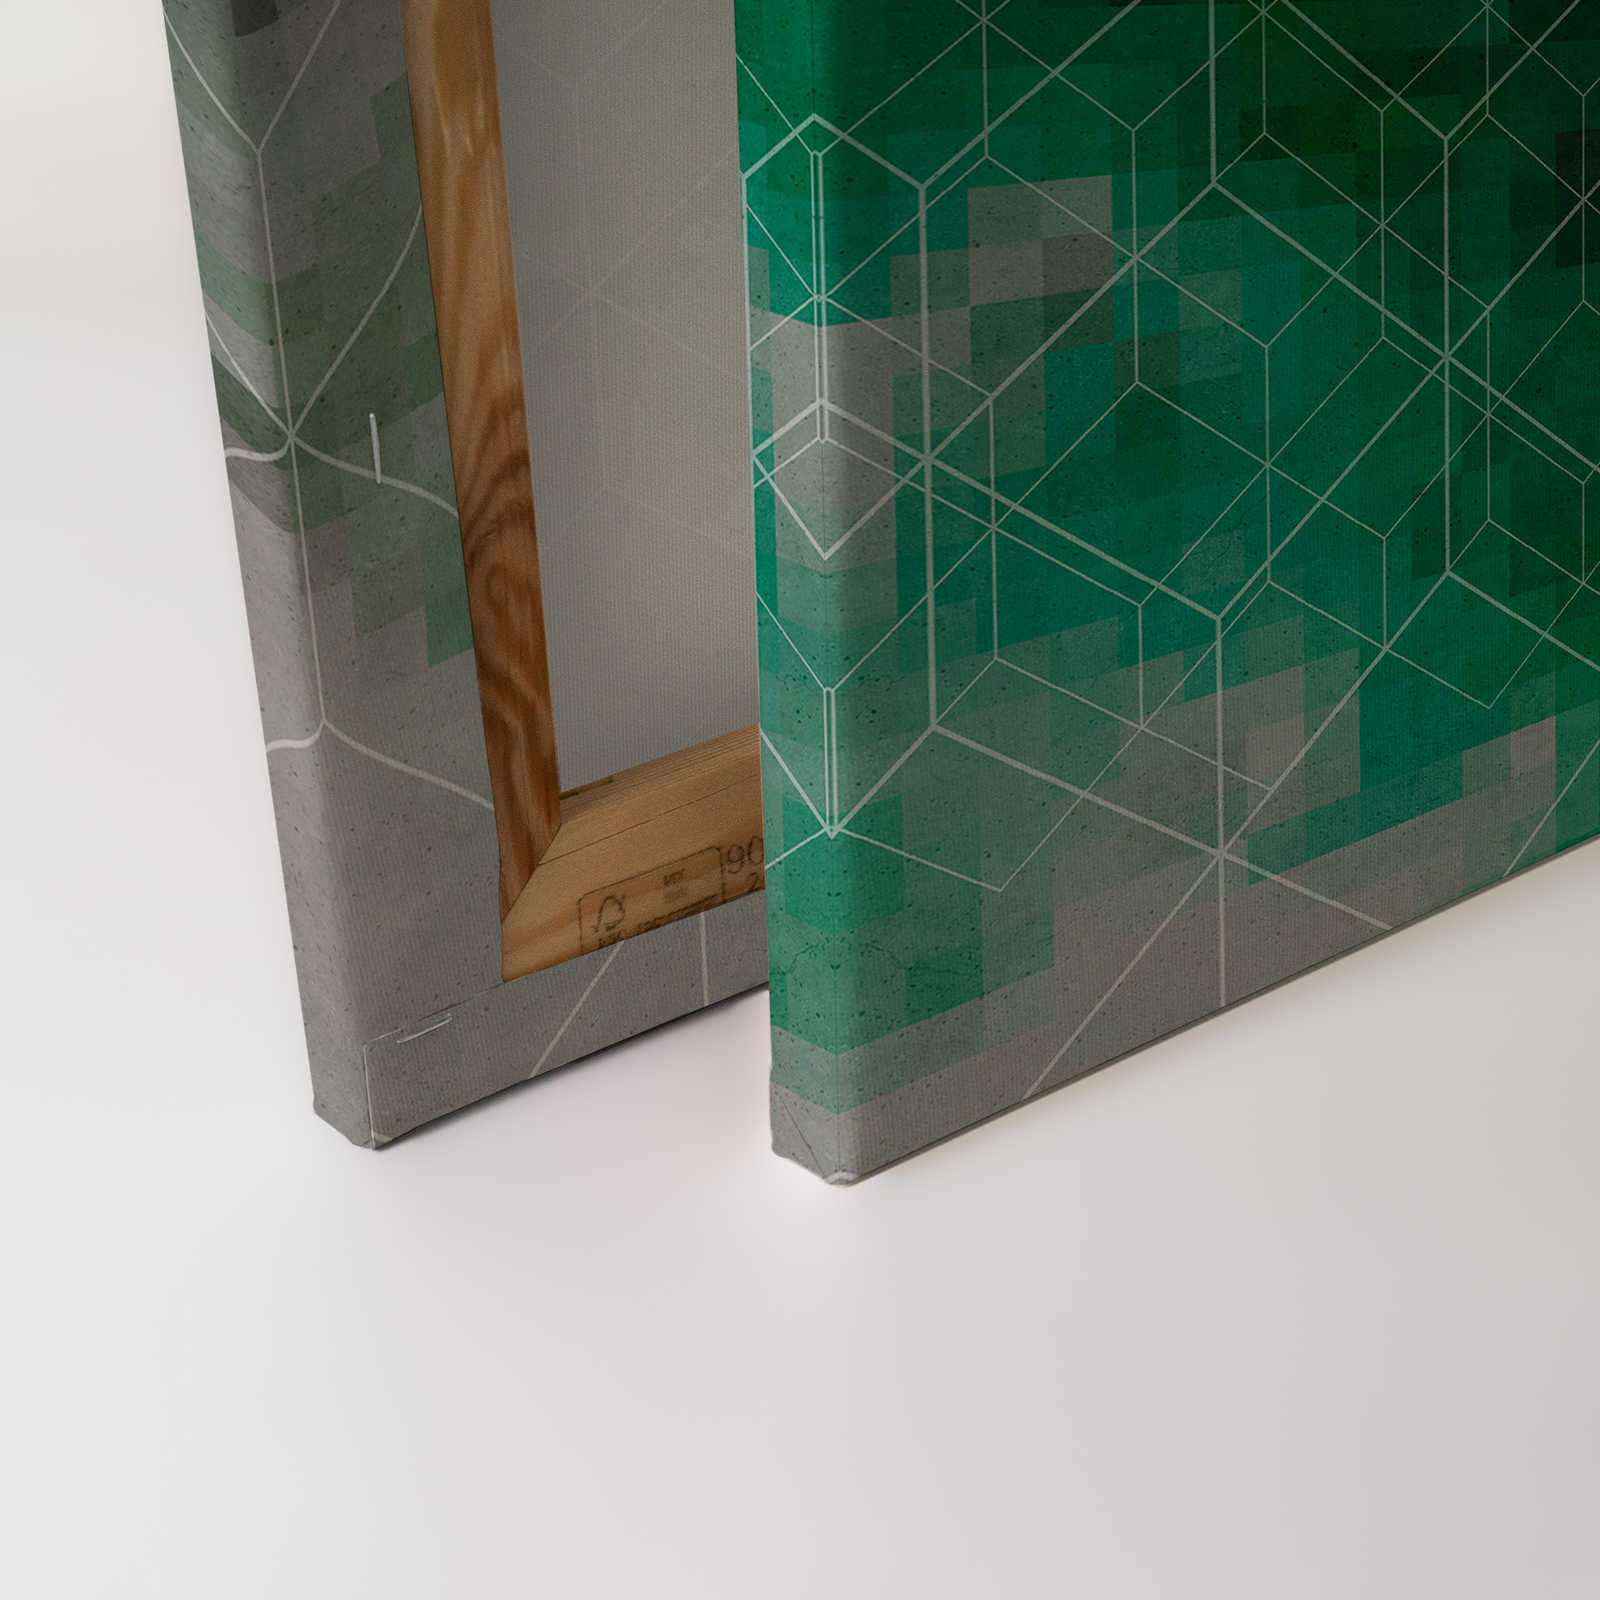             Tableau toile Nuages de couleurs & motifs de lignes | vert, gris - 0,90 m x 0,60 m
        